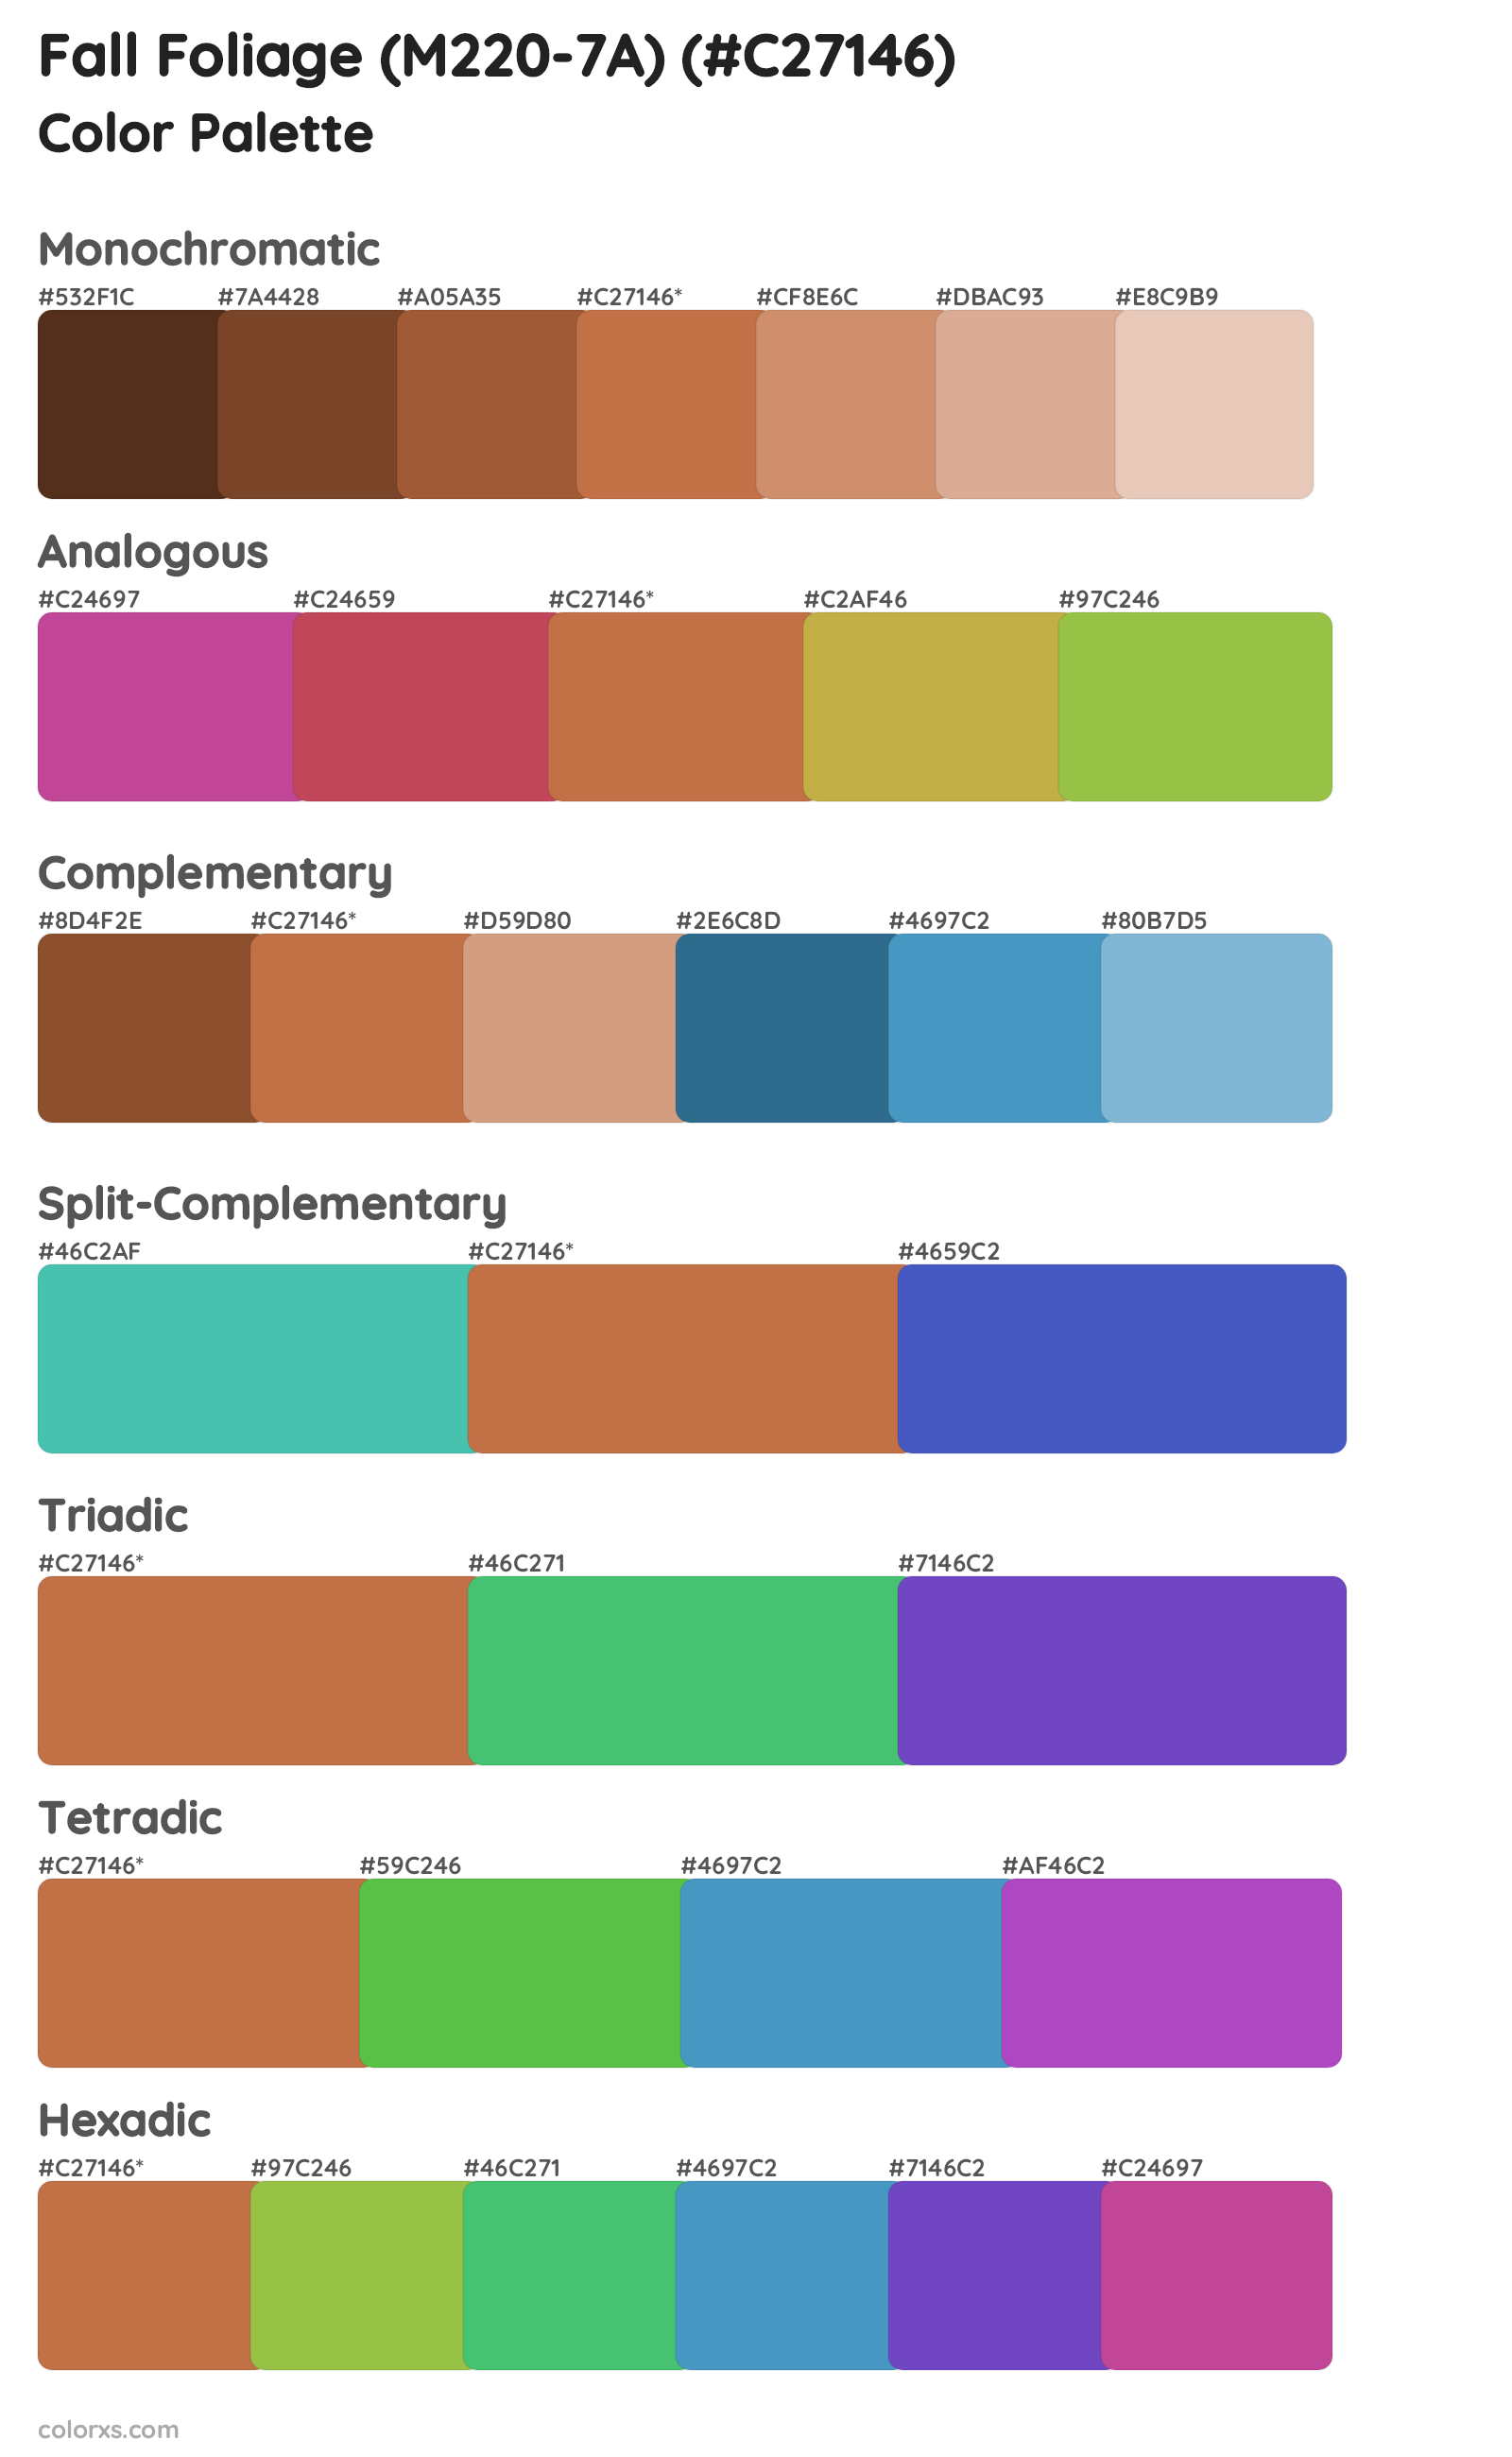 Fall Foliage (M220-7A) Color Scheme Palettes